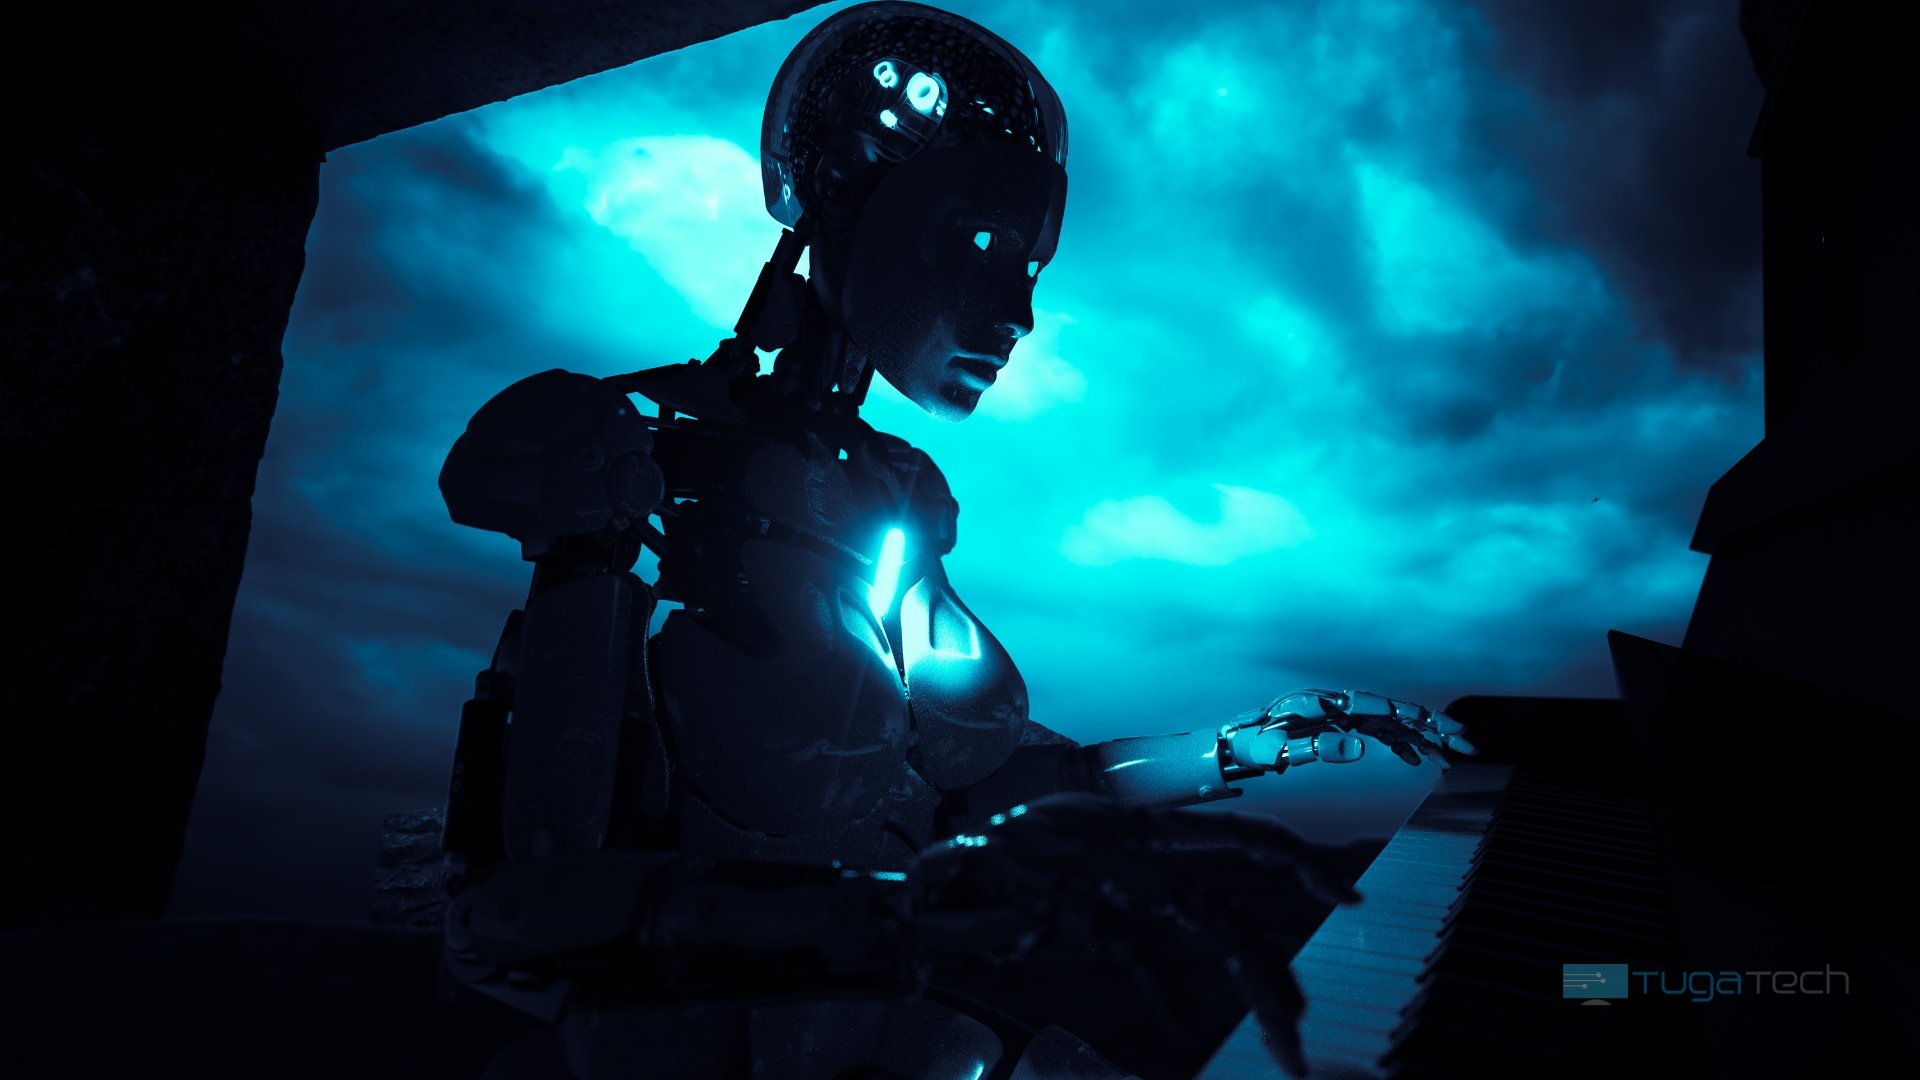 Robot a tocar piano